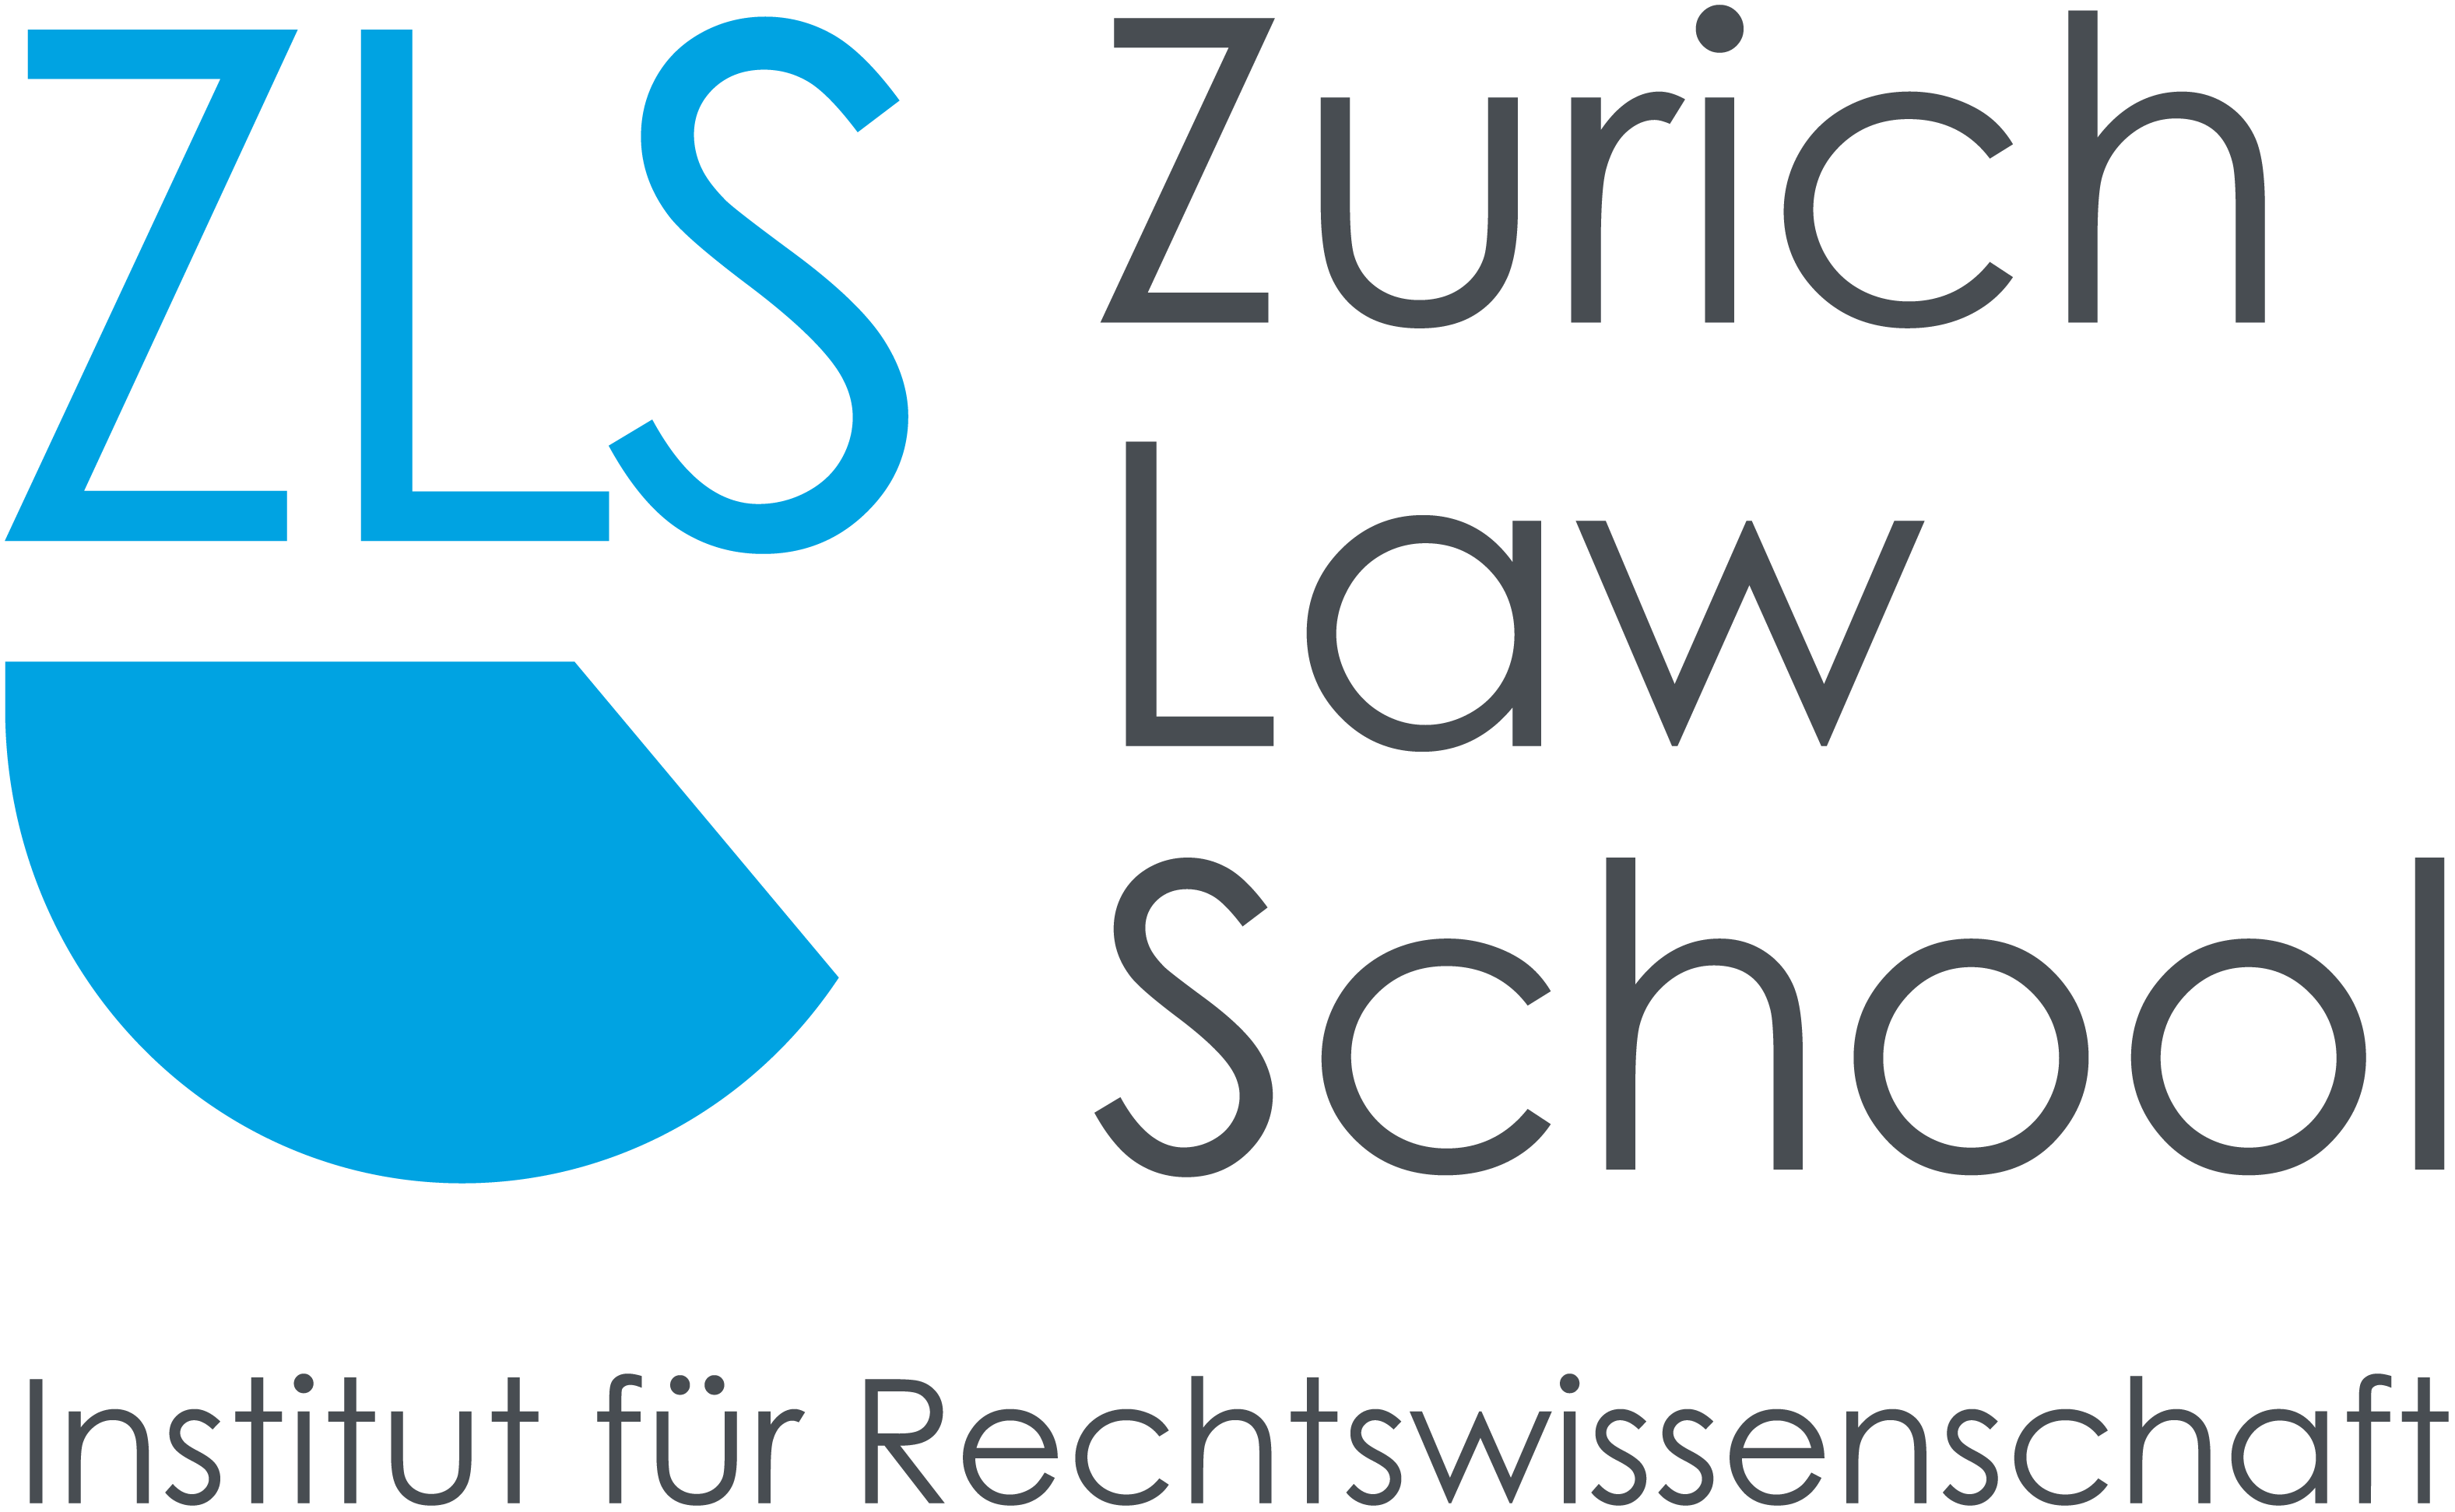 Forschungsförderung der ZLS Zurich Law School